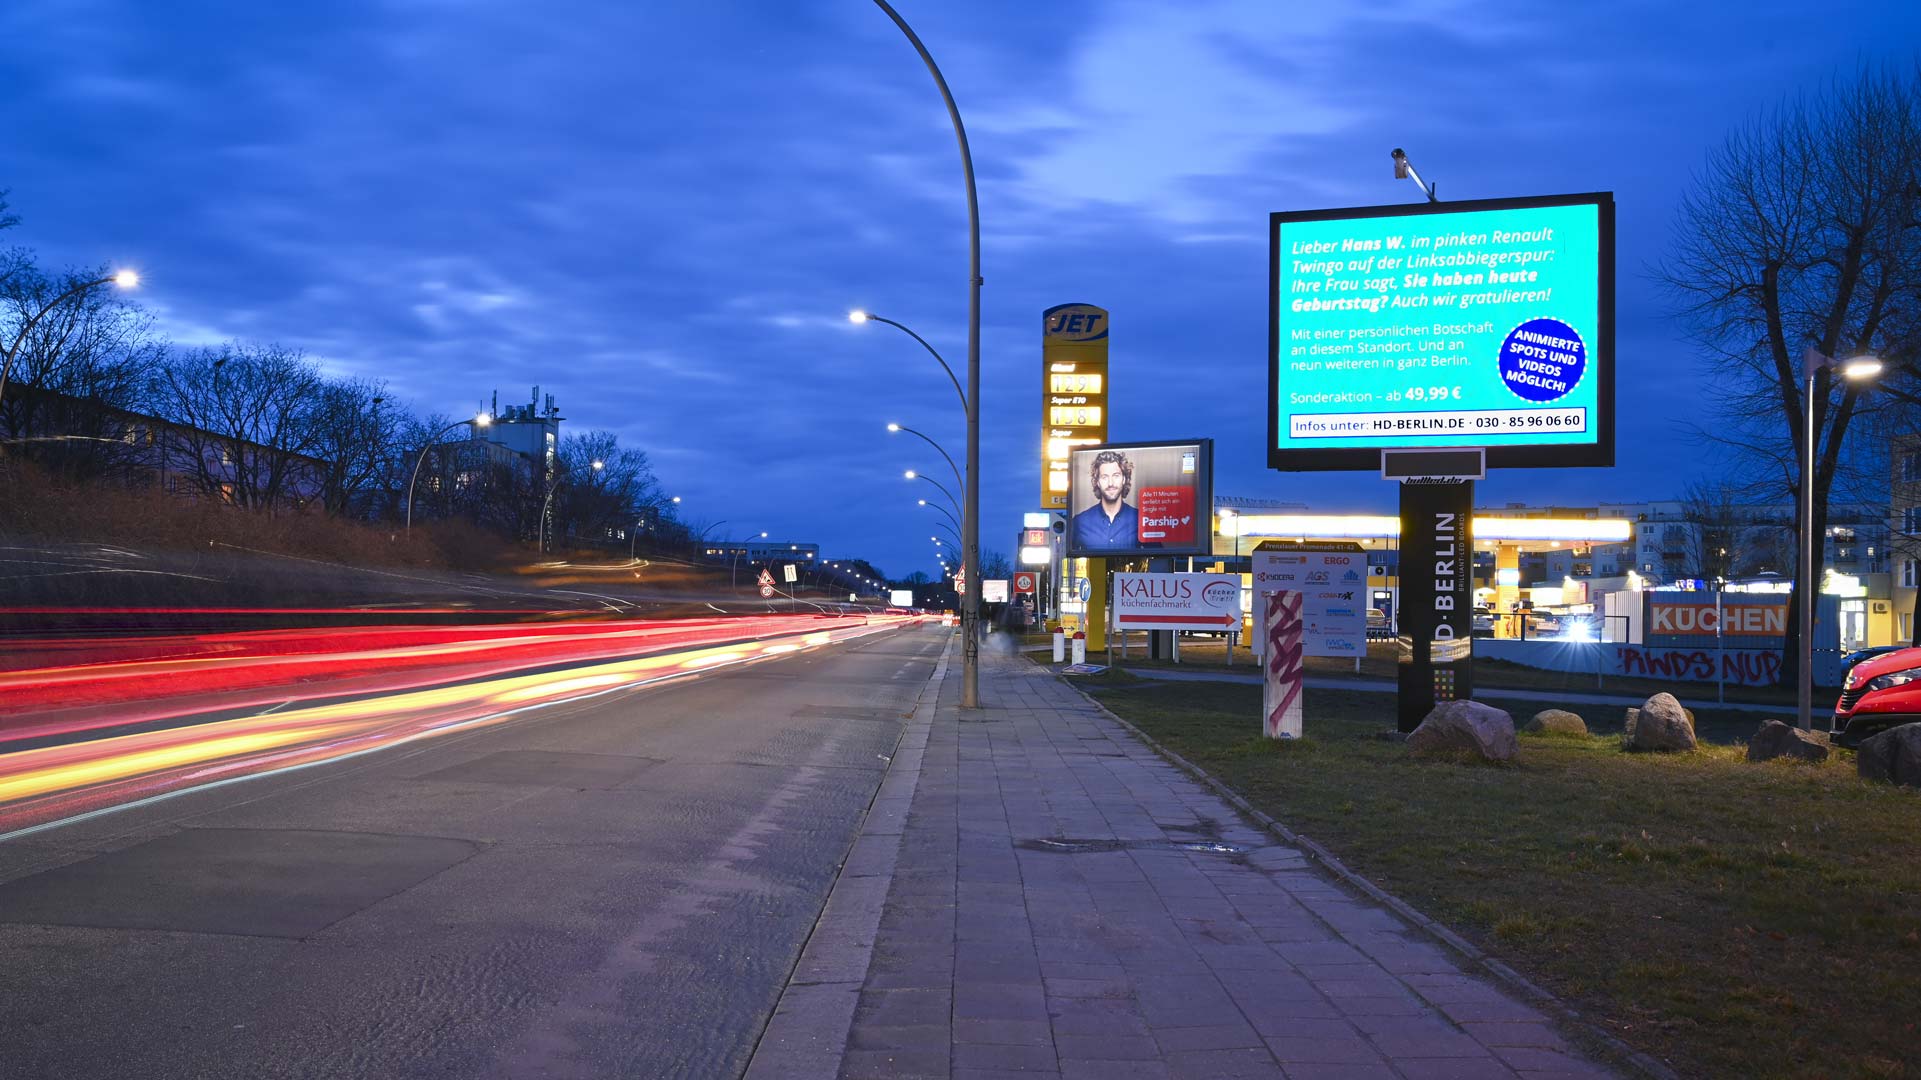 HD Berlin LED Werbefläche mieten in der Charlottenburger Chaussee 47 Berlin, LED Werbung Berlin